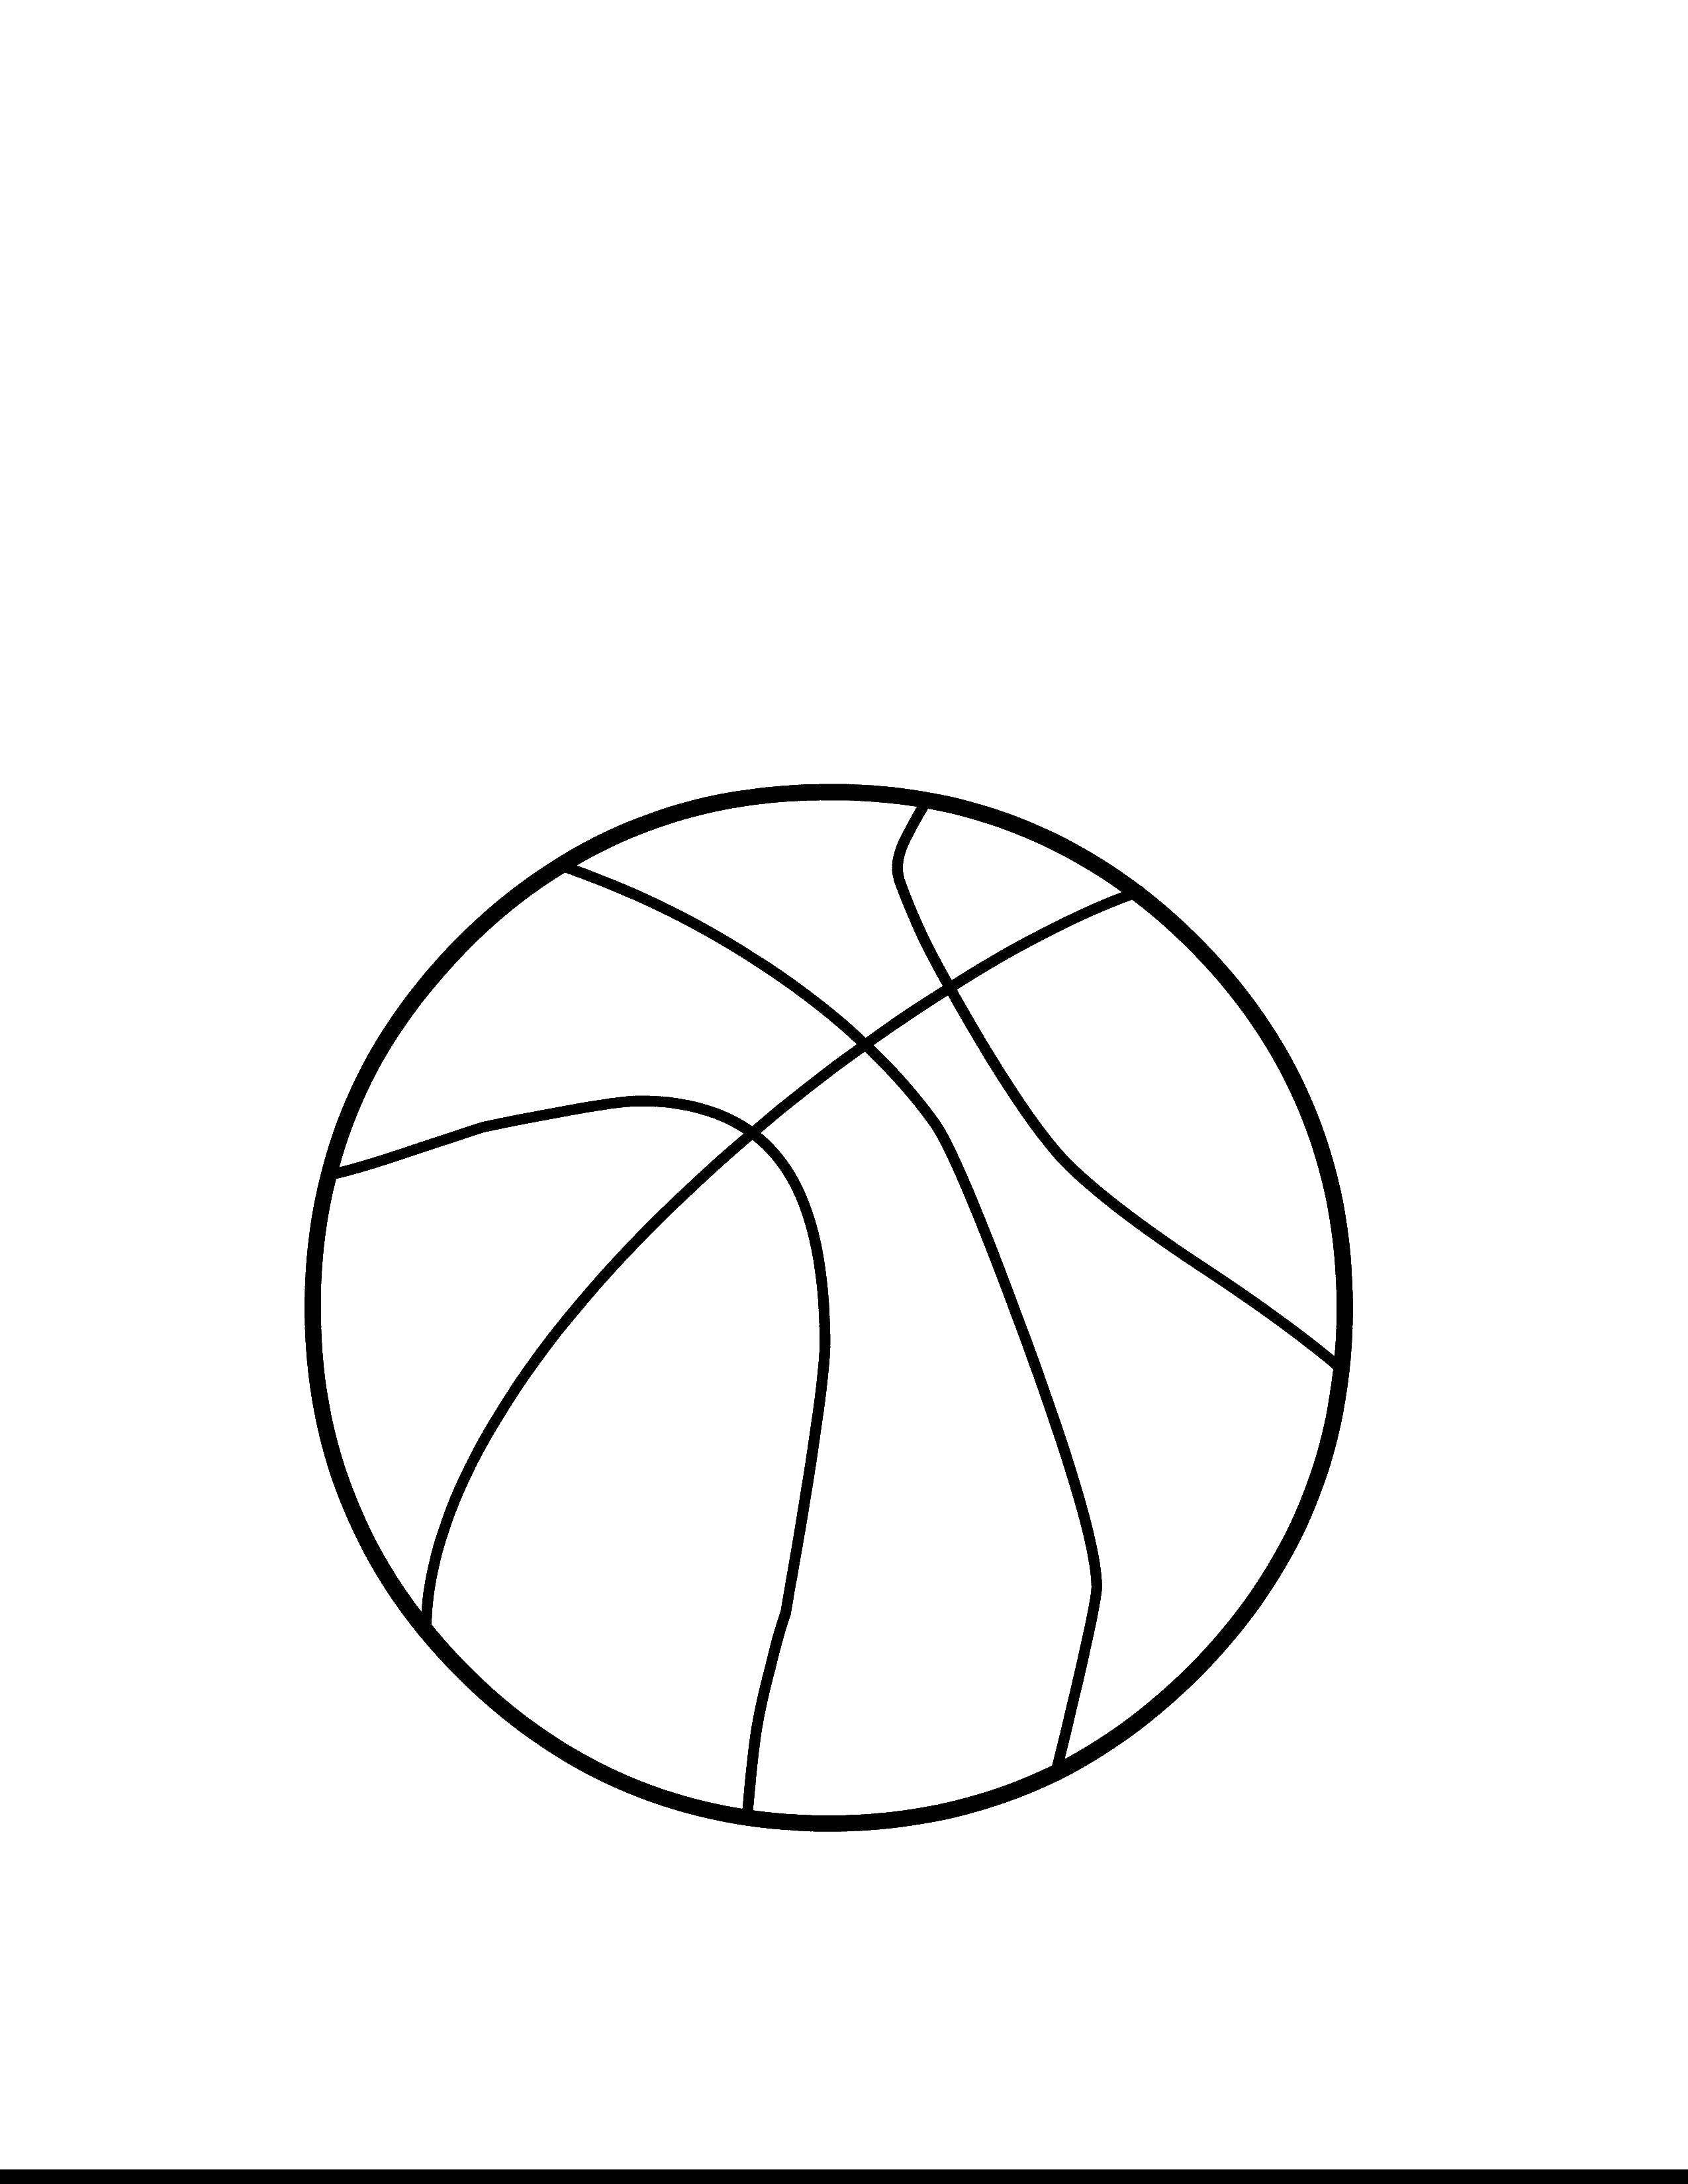 Баскетбольный мячраск